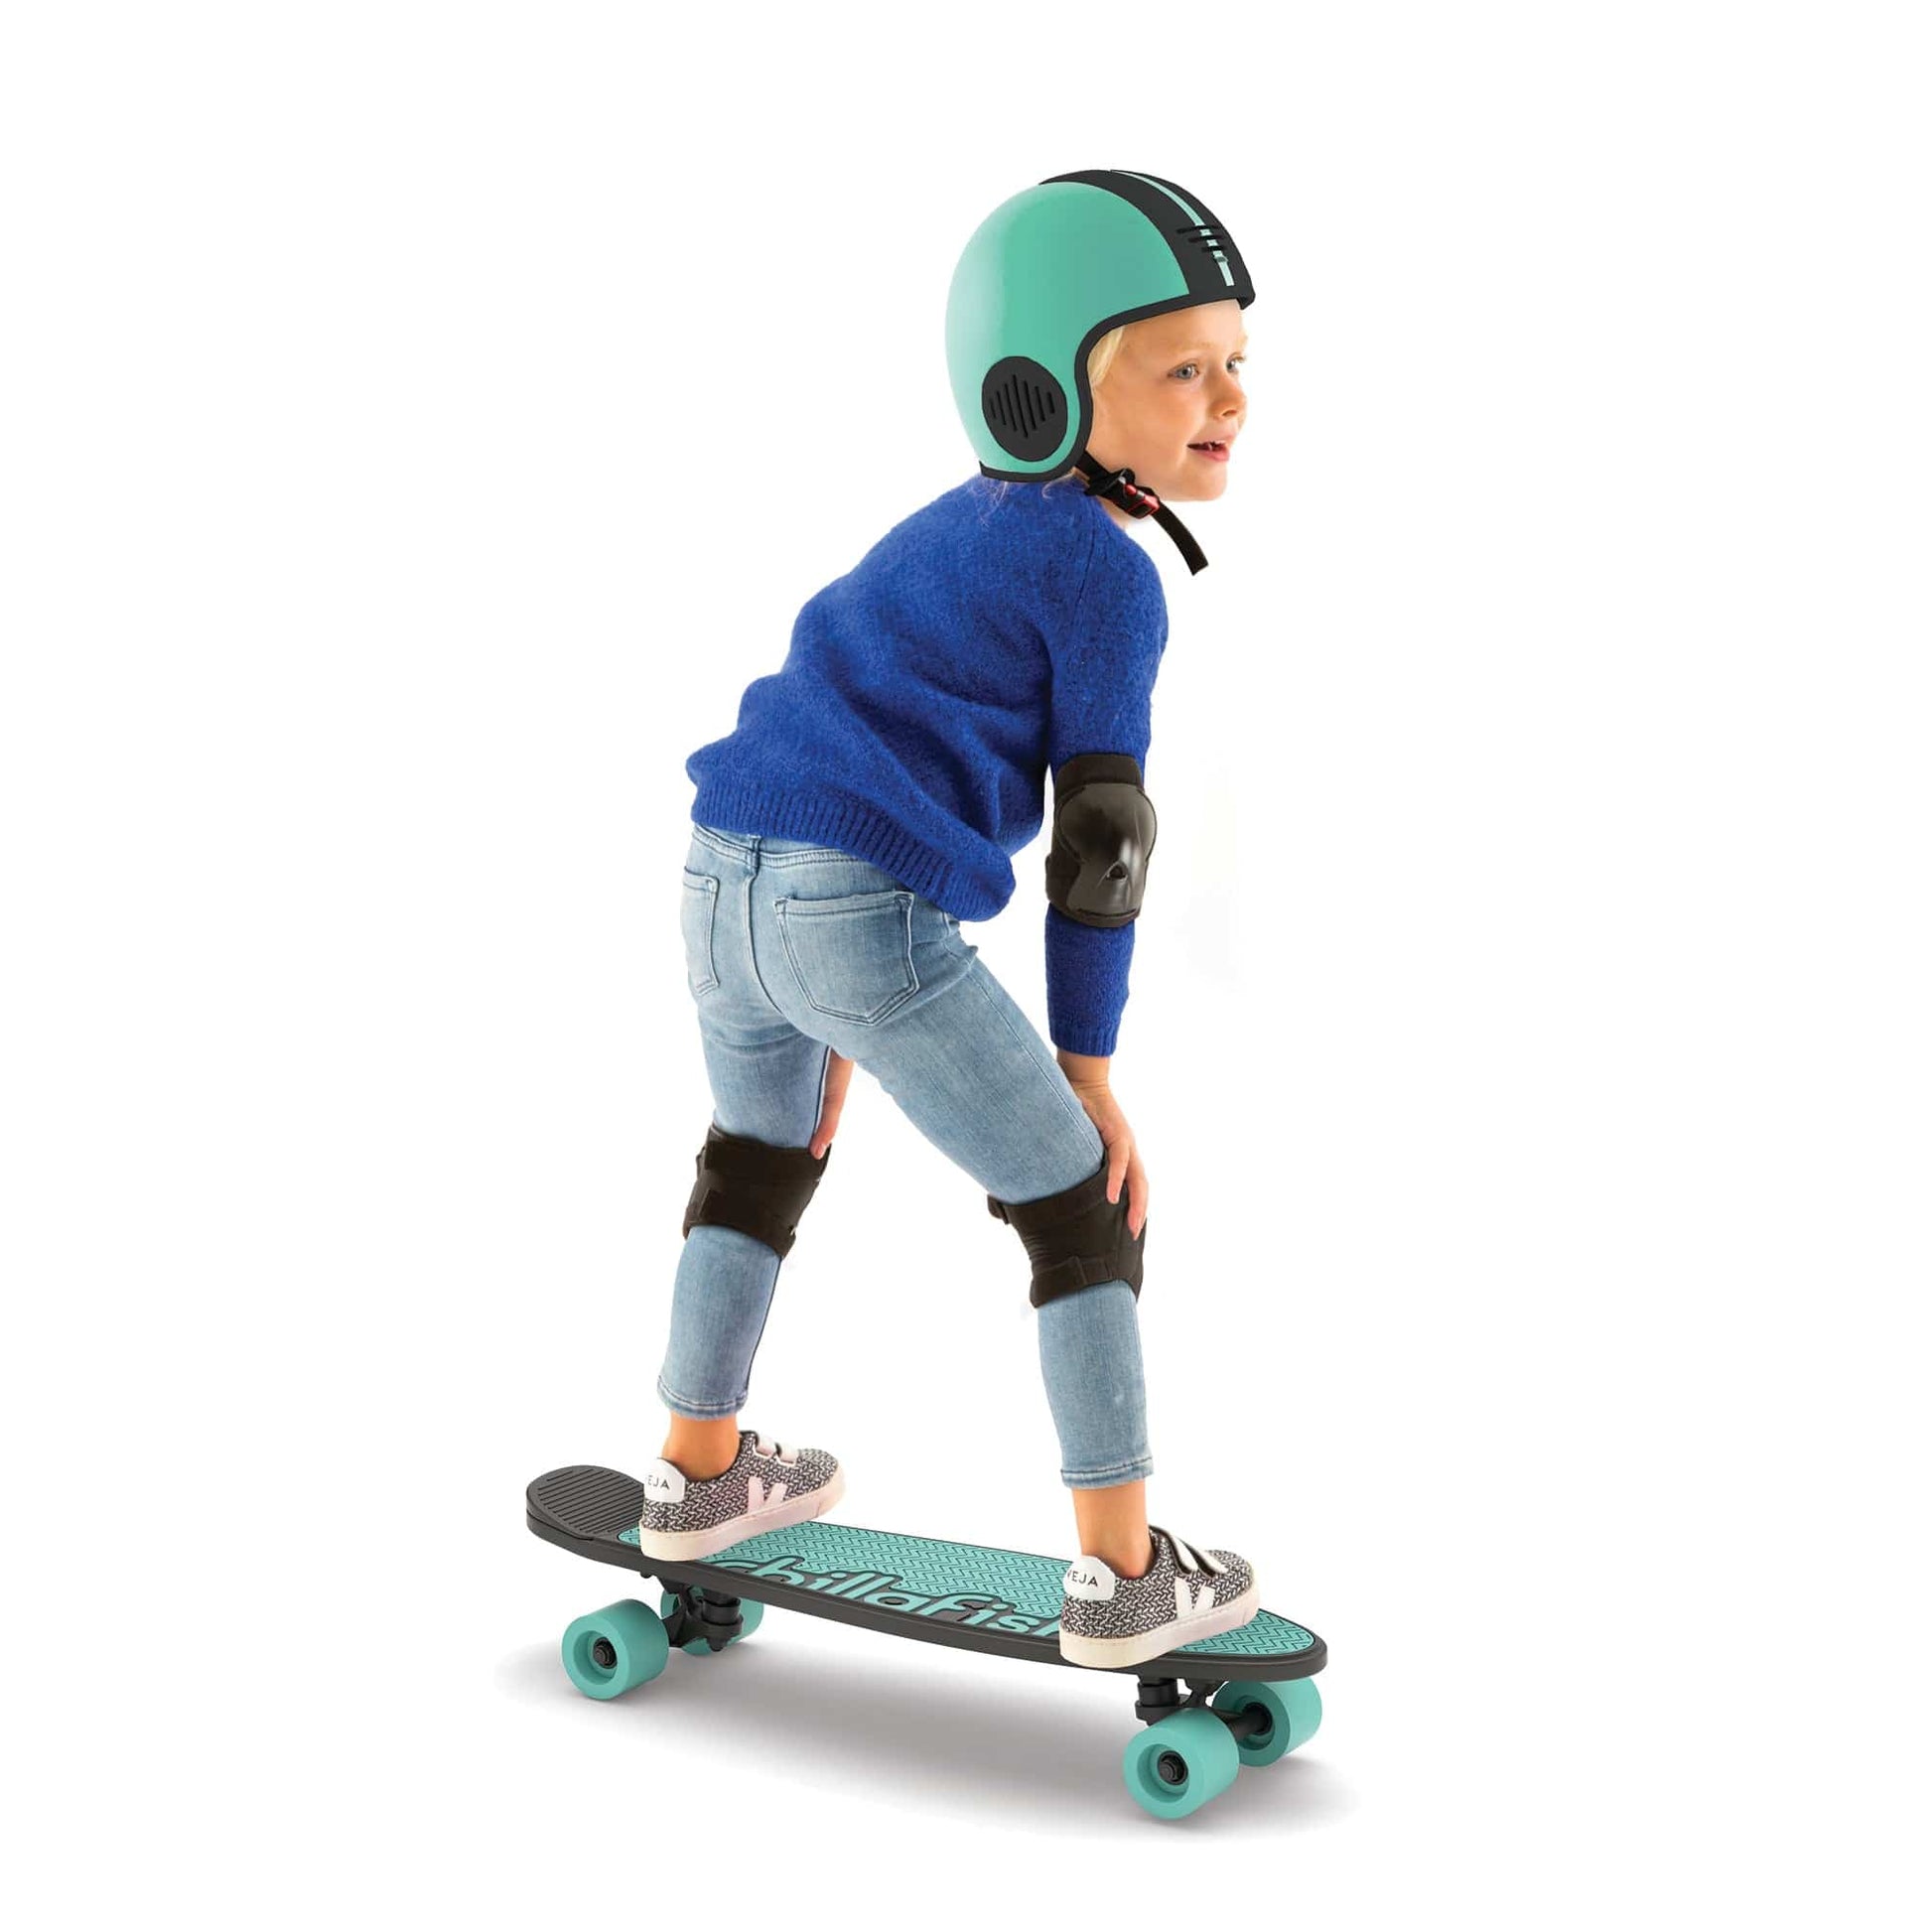 Chillafish Skatie Skootie 2 - Mint Age 3+ - The Online Toy Shop - Skateboard - 2